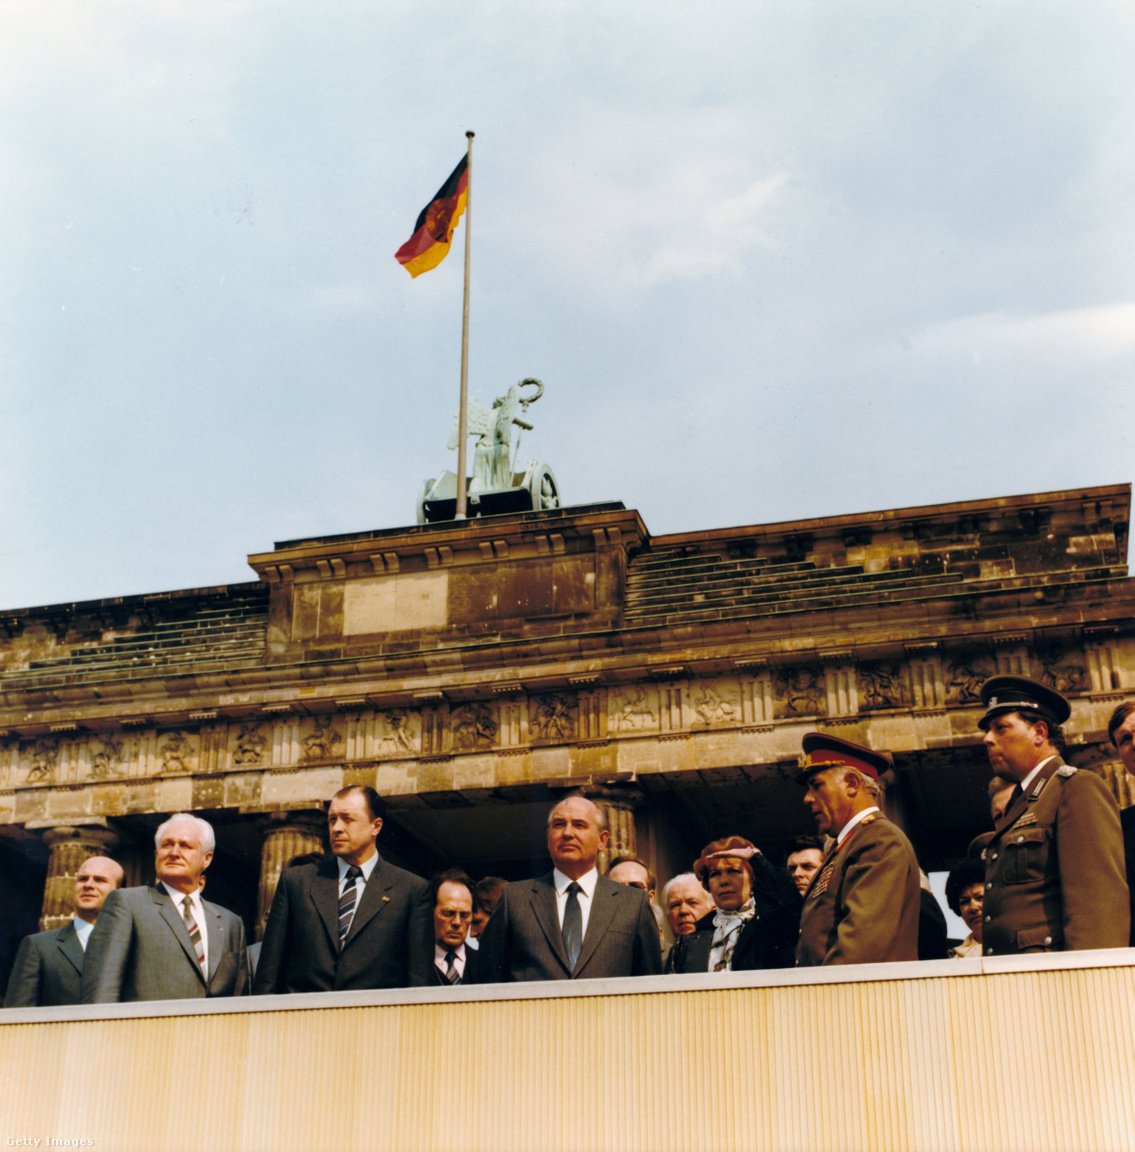 Berlin, Németország, 1986. április 16. KPKSZ küldöttség - Mihail Gorbacsov, a KPKSZ Központi Bizottságának főtitkára, pártja küldöttségét vezetve a SED XI. pártkongresszusán a Brandenburgi kapunál az államhatárra látogat, bal szélen Günter Mittag, a Politbüro tagja és a SED Központi Bizottságának titkára, jobbról a 2. Karl-Heinz Drews városi parancsnok altábornagy